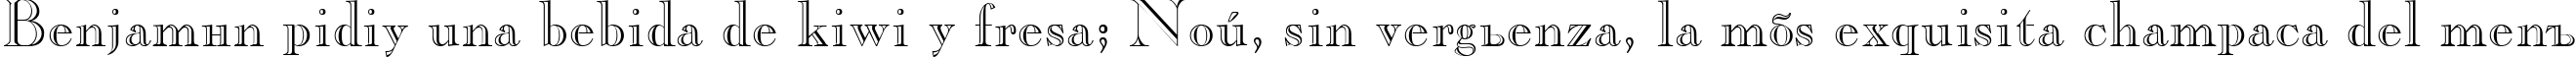 Пример написания шрифтом Casper текста на испанском